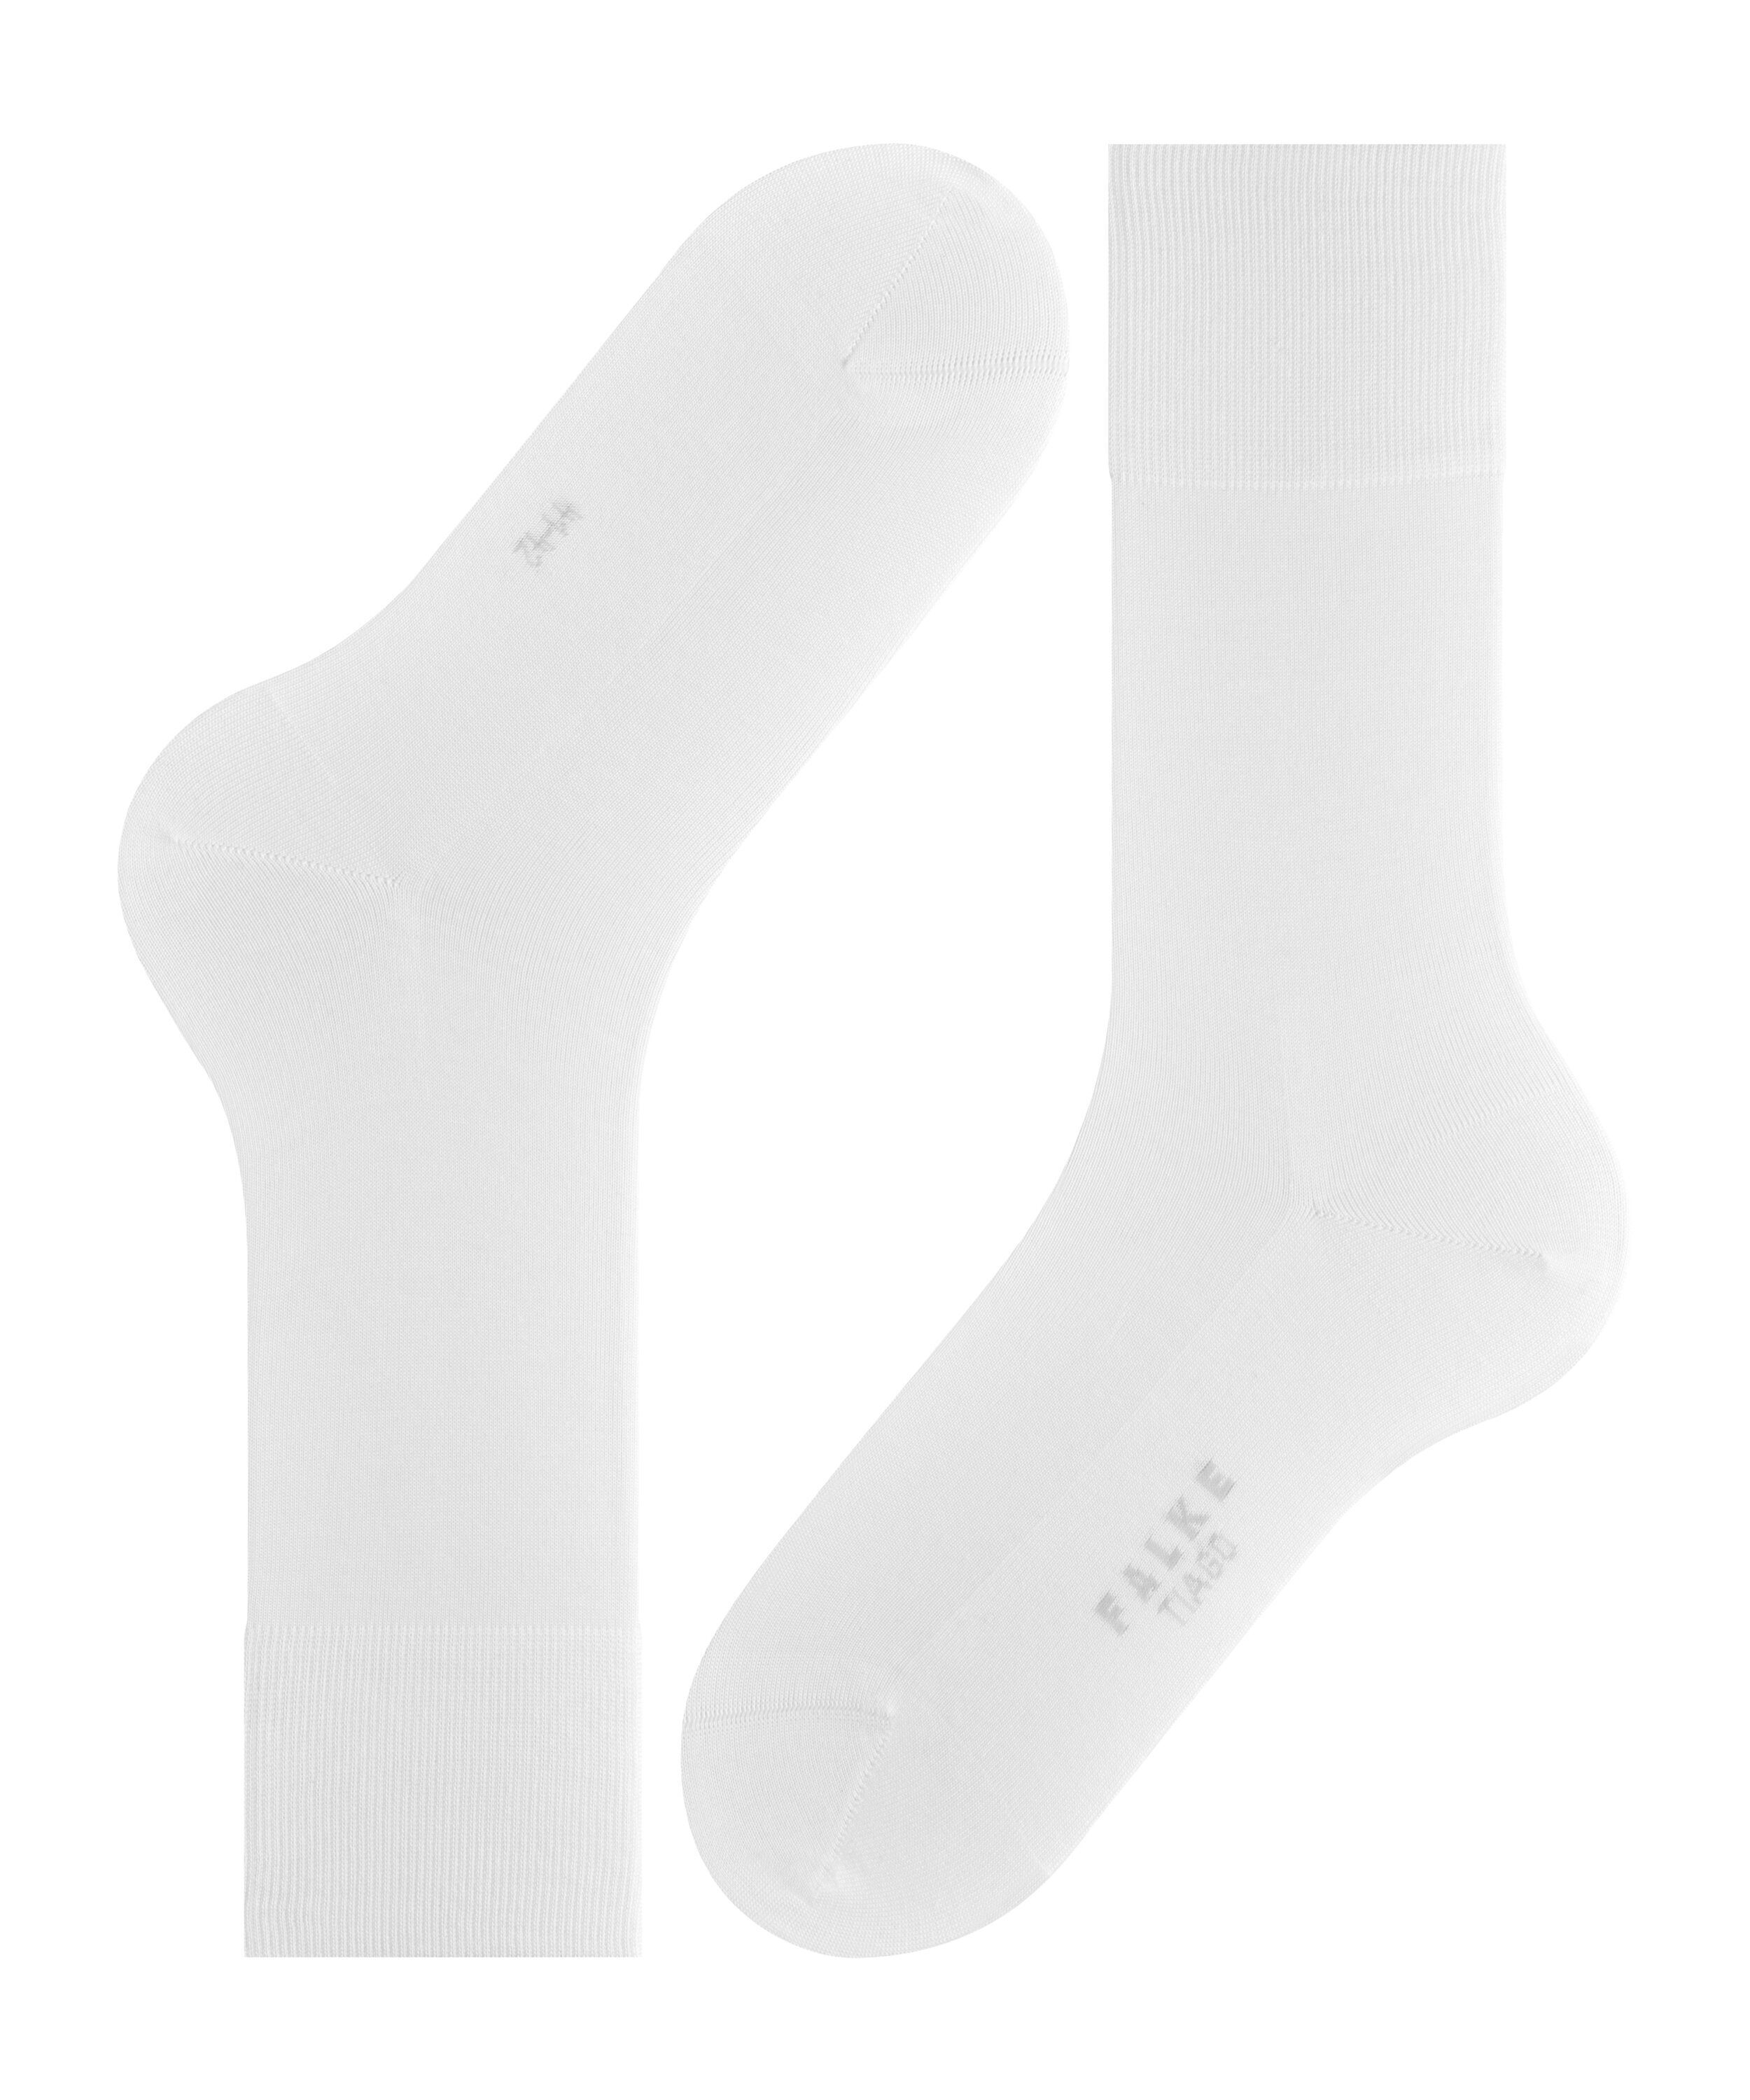 Tiago FALKE white (2000) (1-Paar) Socken